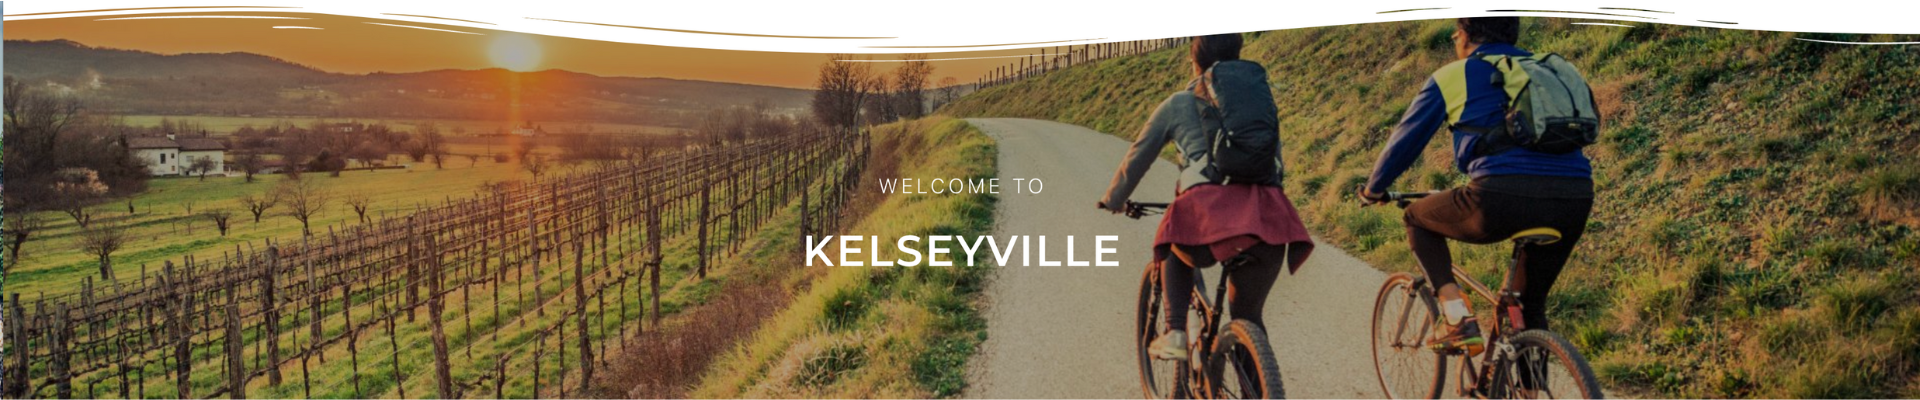 Community Kelseyville